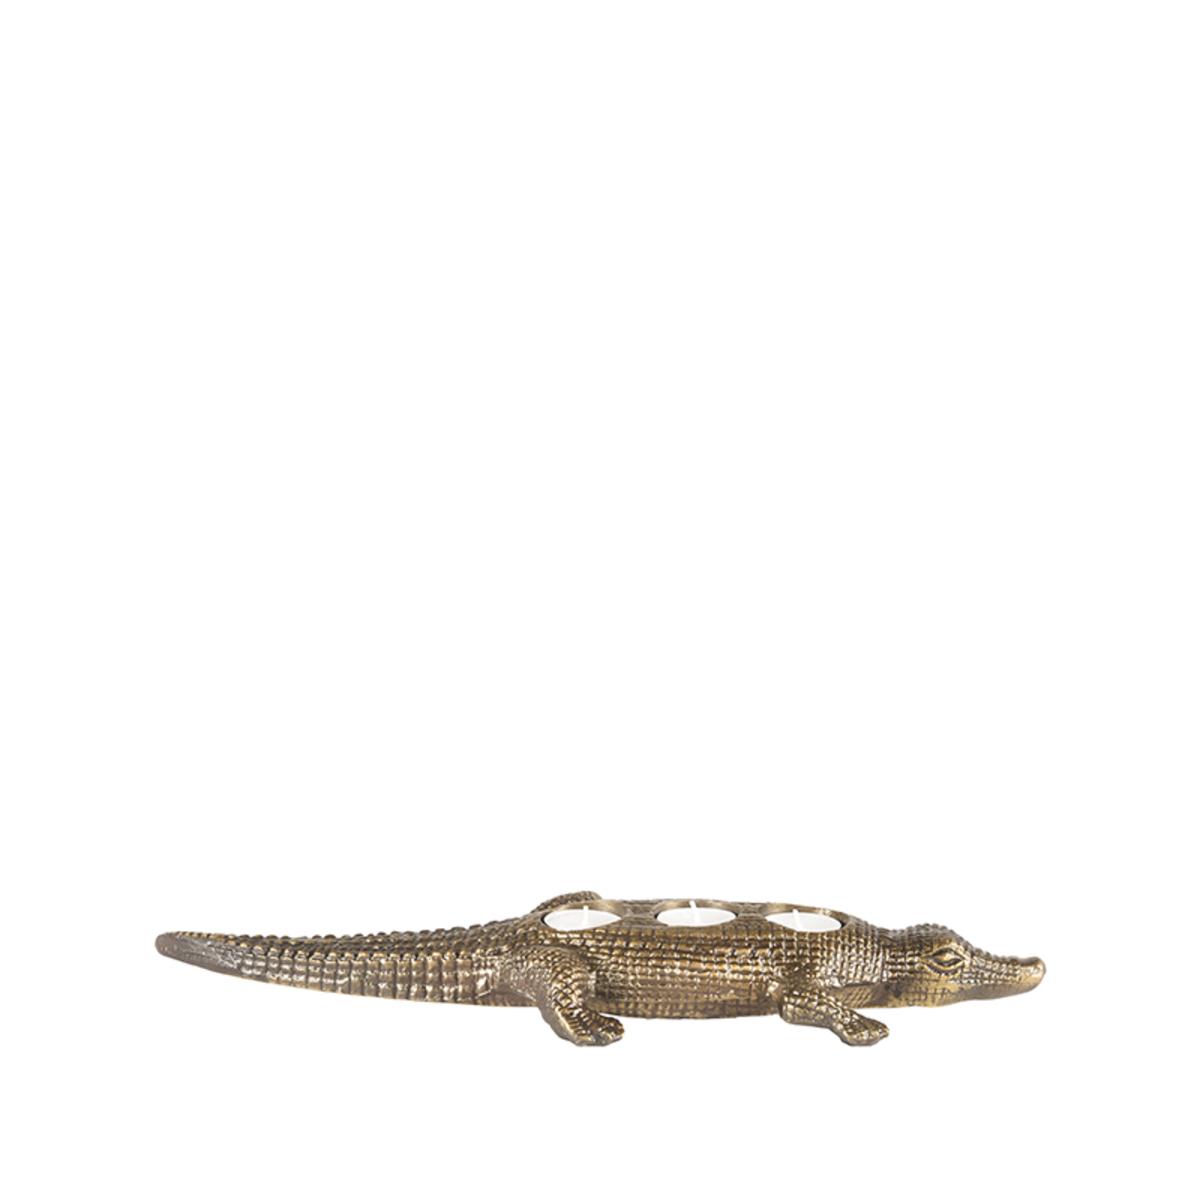  Krokodil - Antiek goud - Metaal afbeelding 3